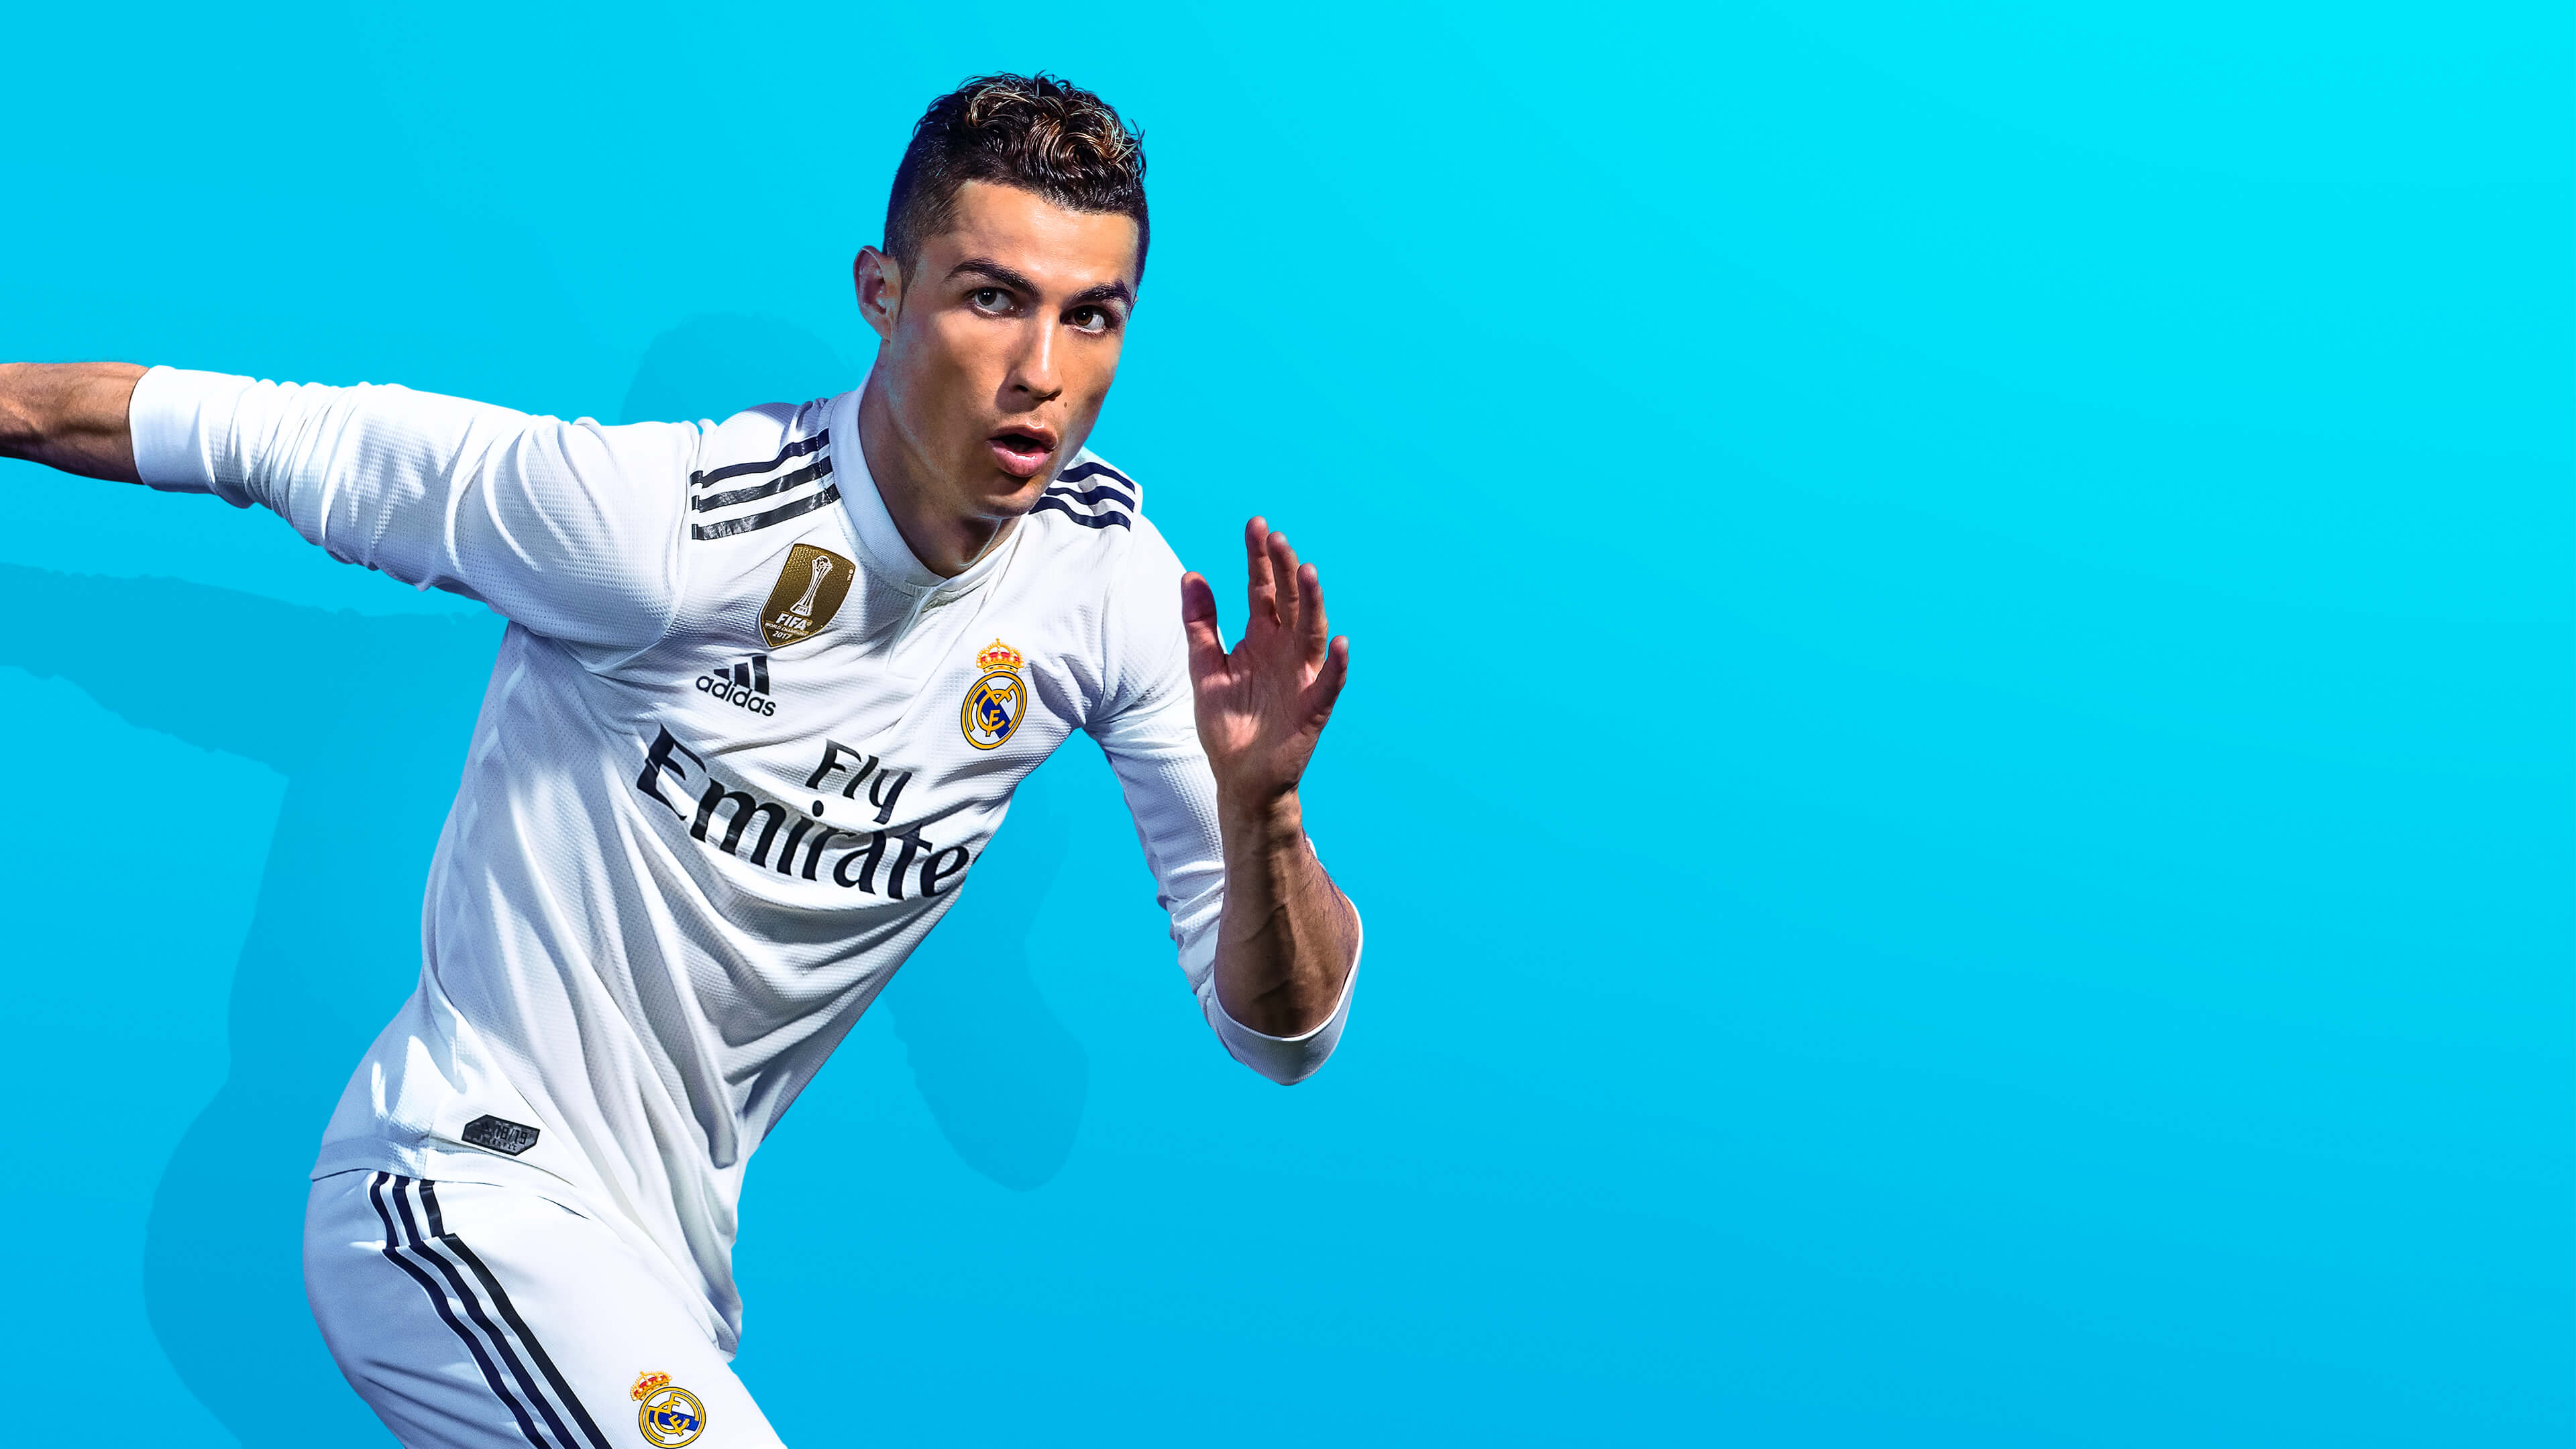 Cristiano Ronaldo FIFA 19 Video Game 4K